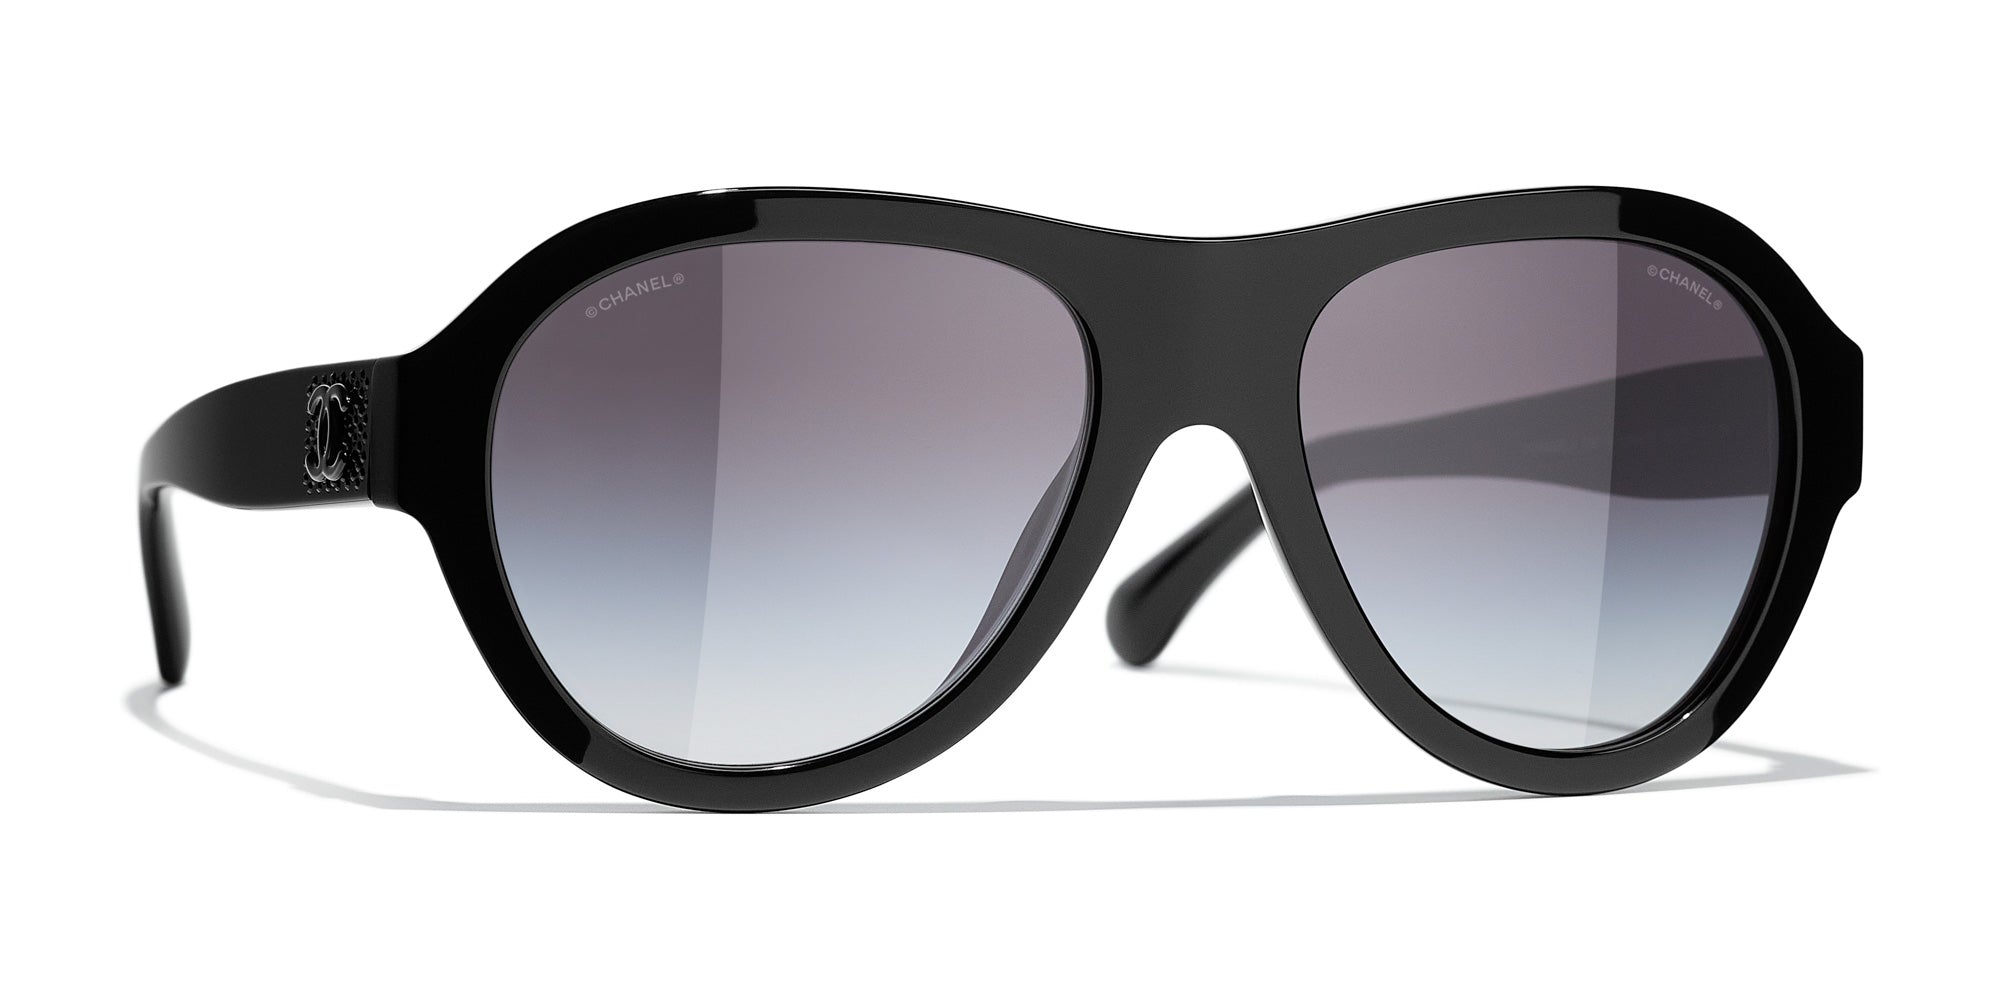 Chanel 5467B C622/T8 Sunglasses - US